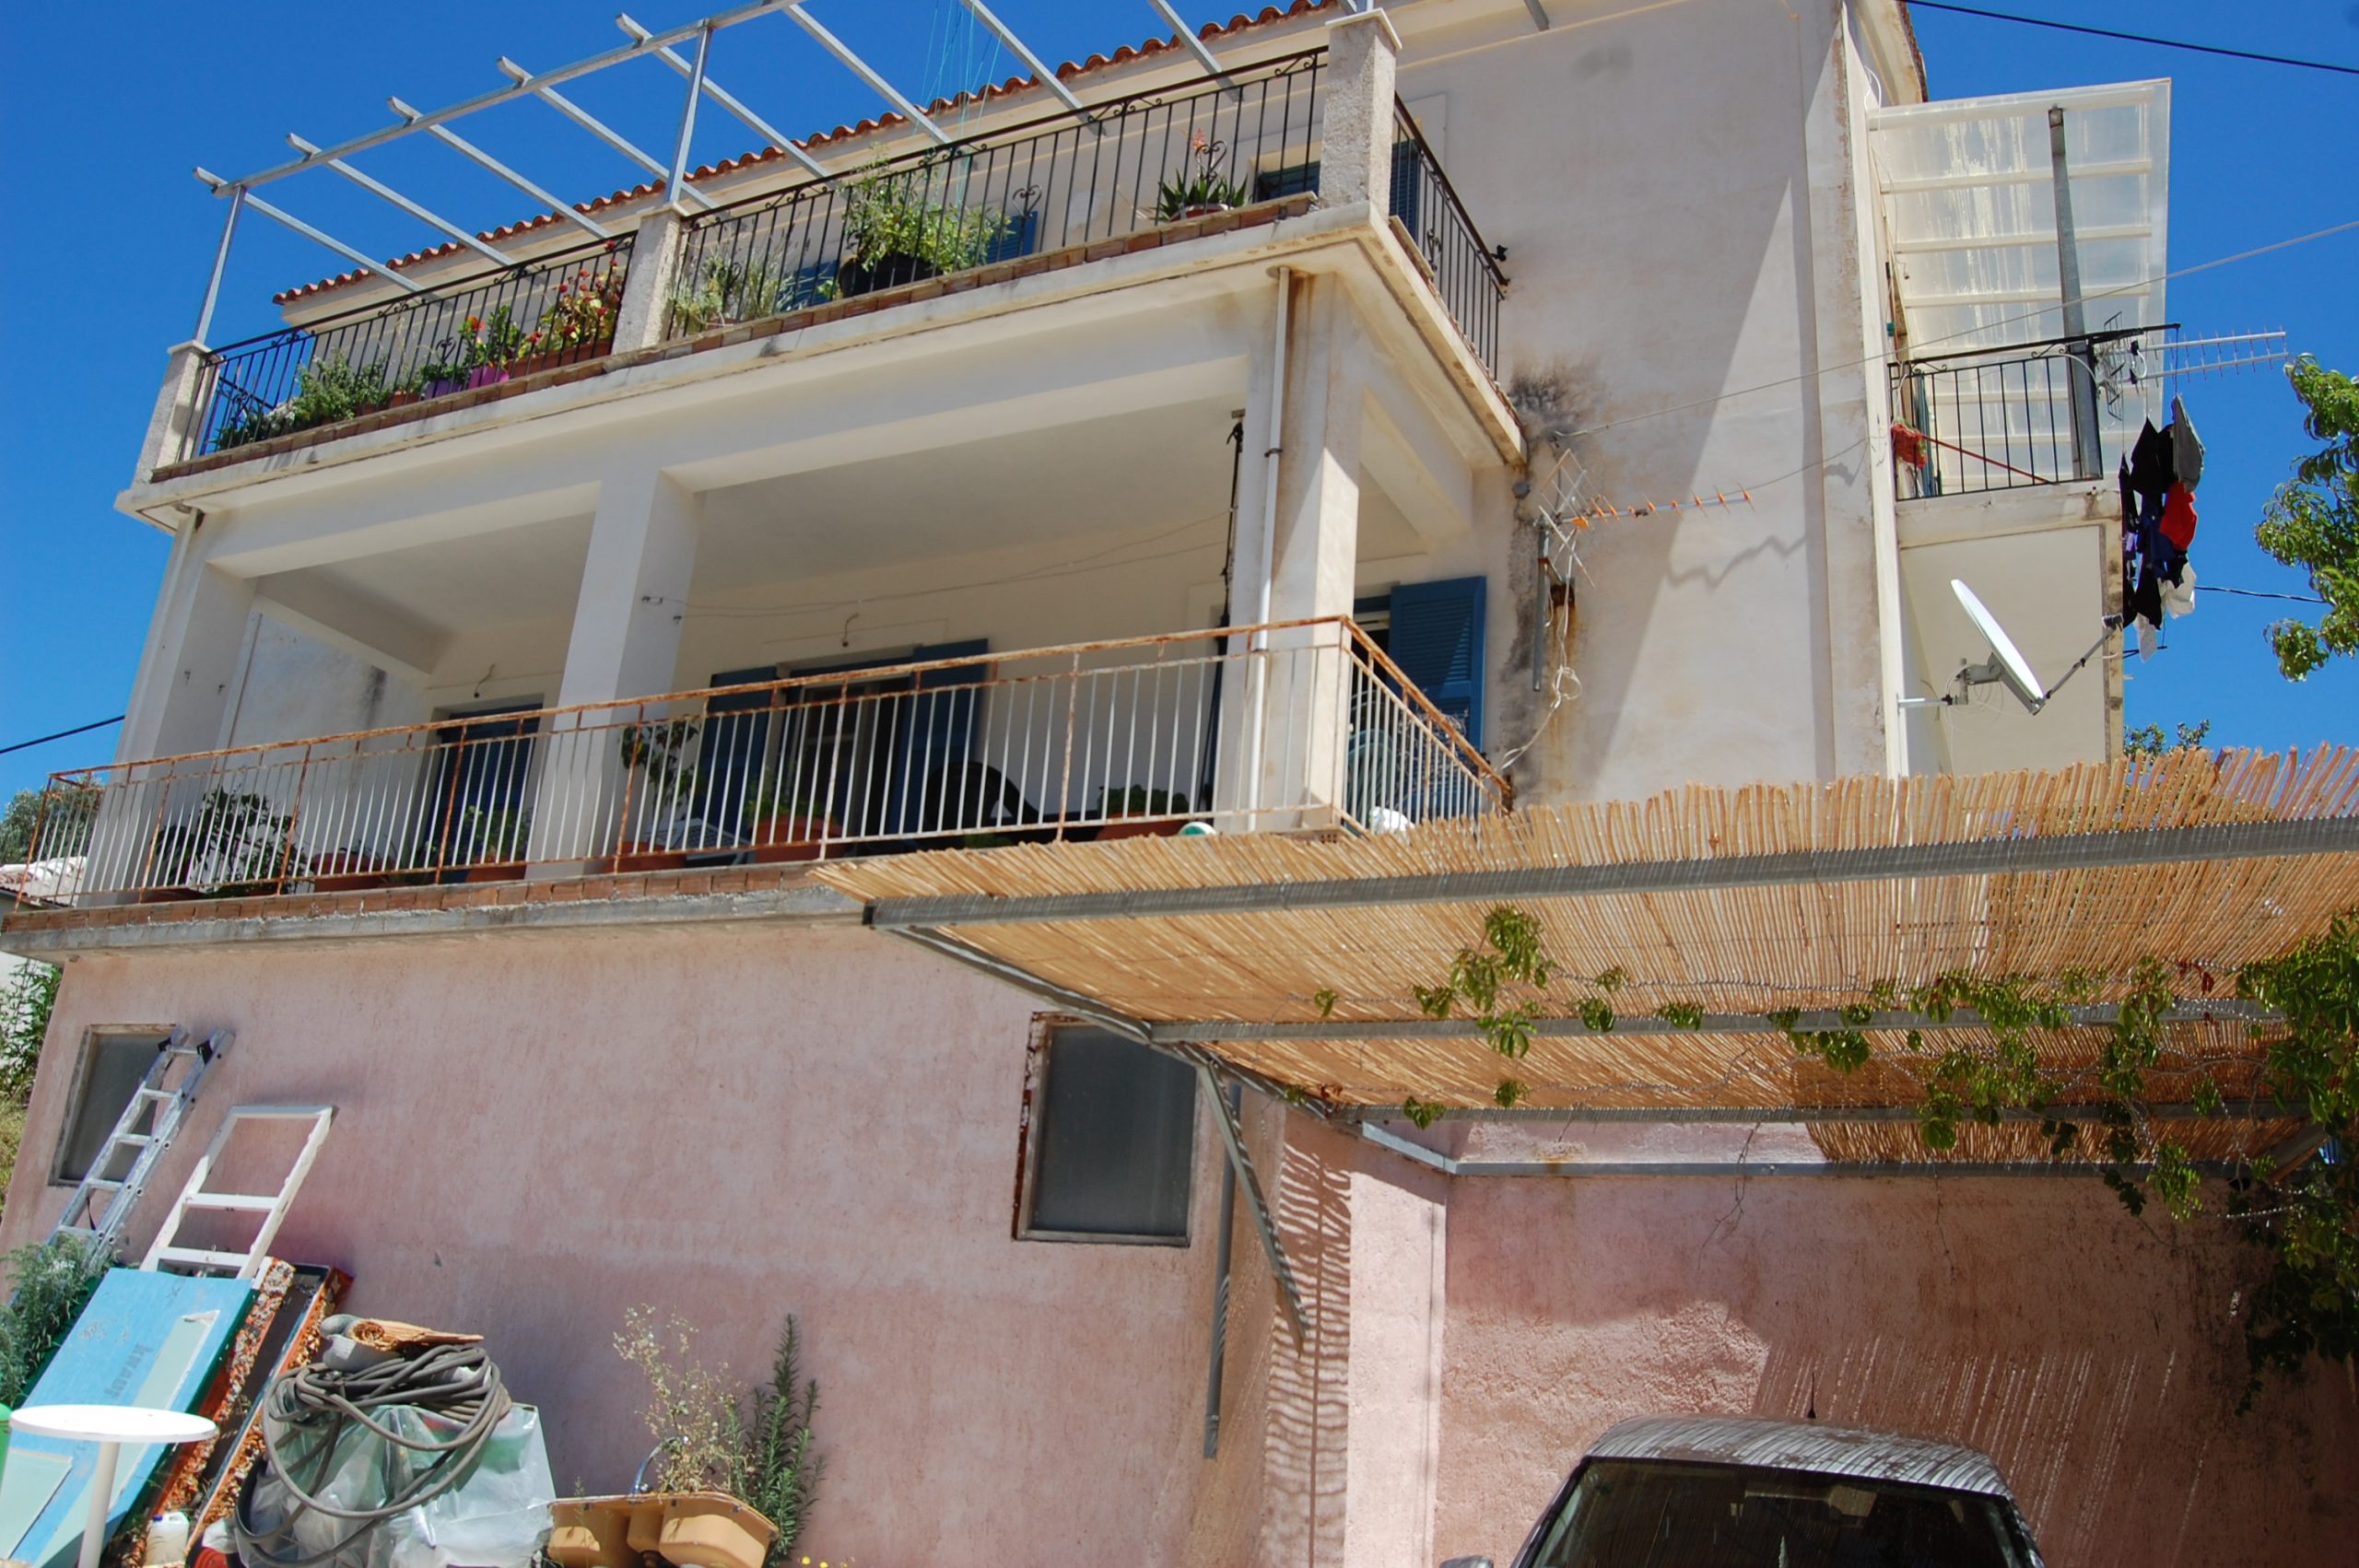 Εξωτερική πρόσοψη κατοικίας προς πώληση Ιθάκια Ελλάδα Πλατρειθιάς